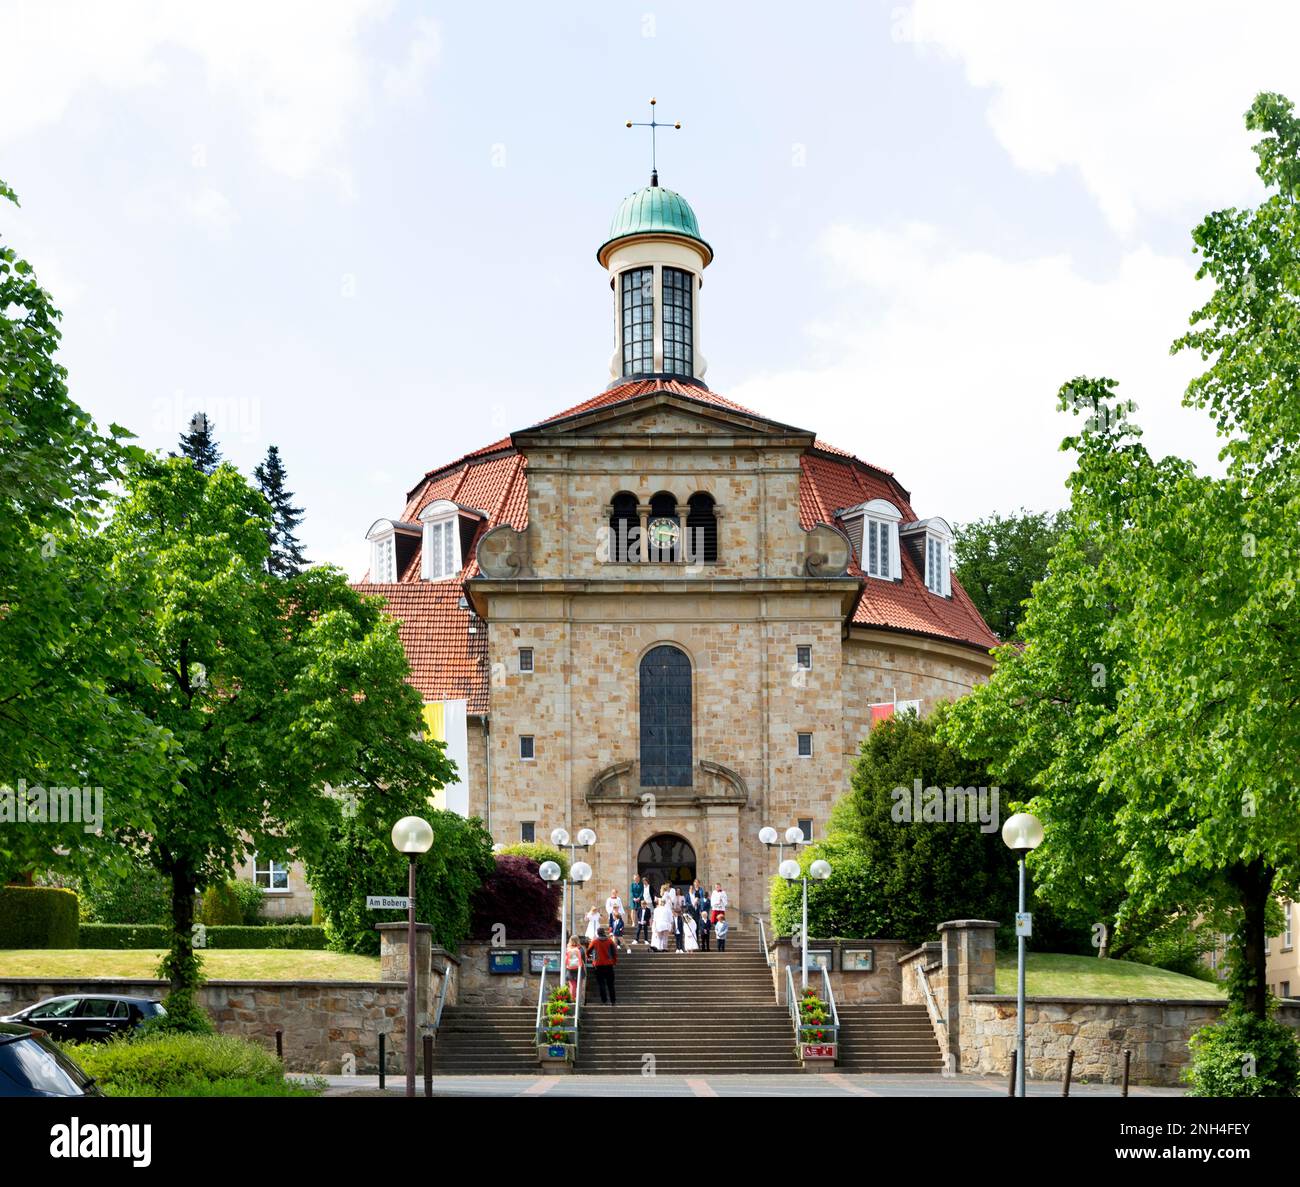 Monastère d'Ohrbeck et centre éducatif catholique, Holzhausen, Georgsmarienhuette, Basse-Saxe, Allemagne Banque D'Images